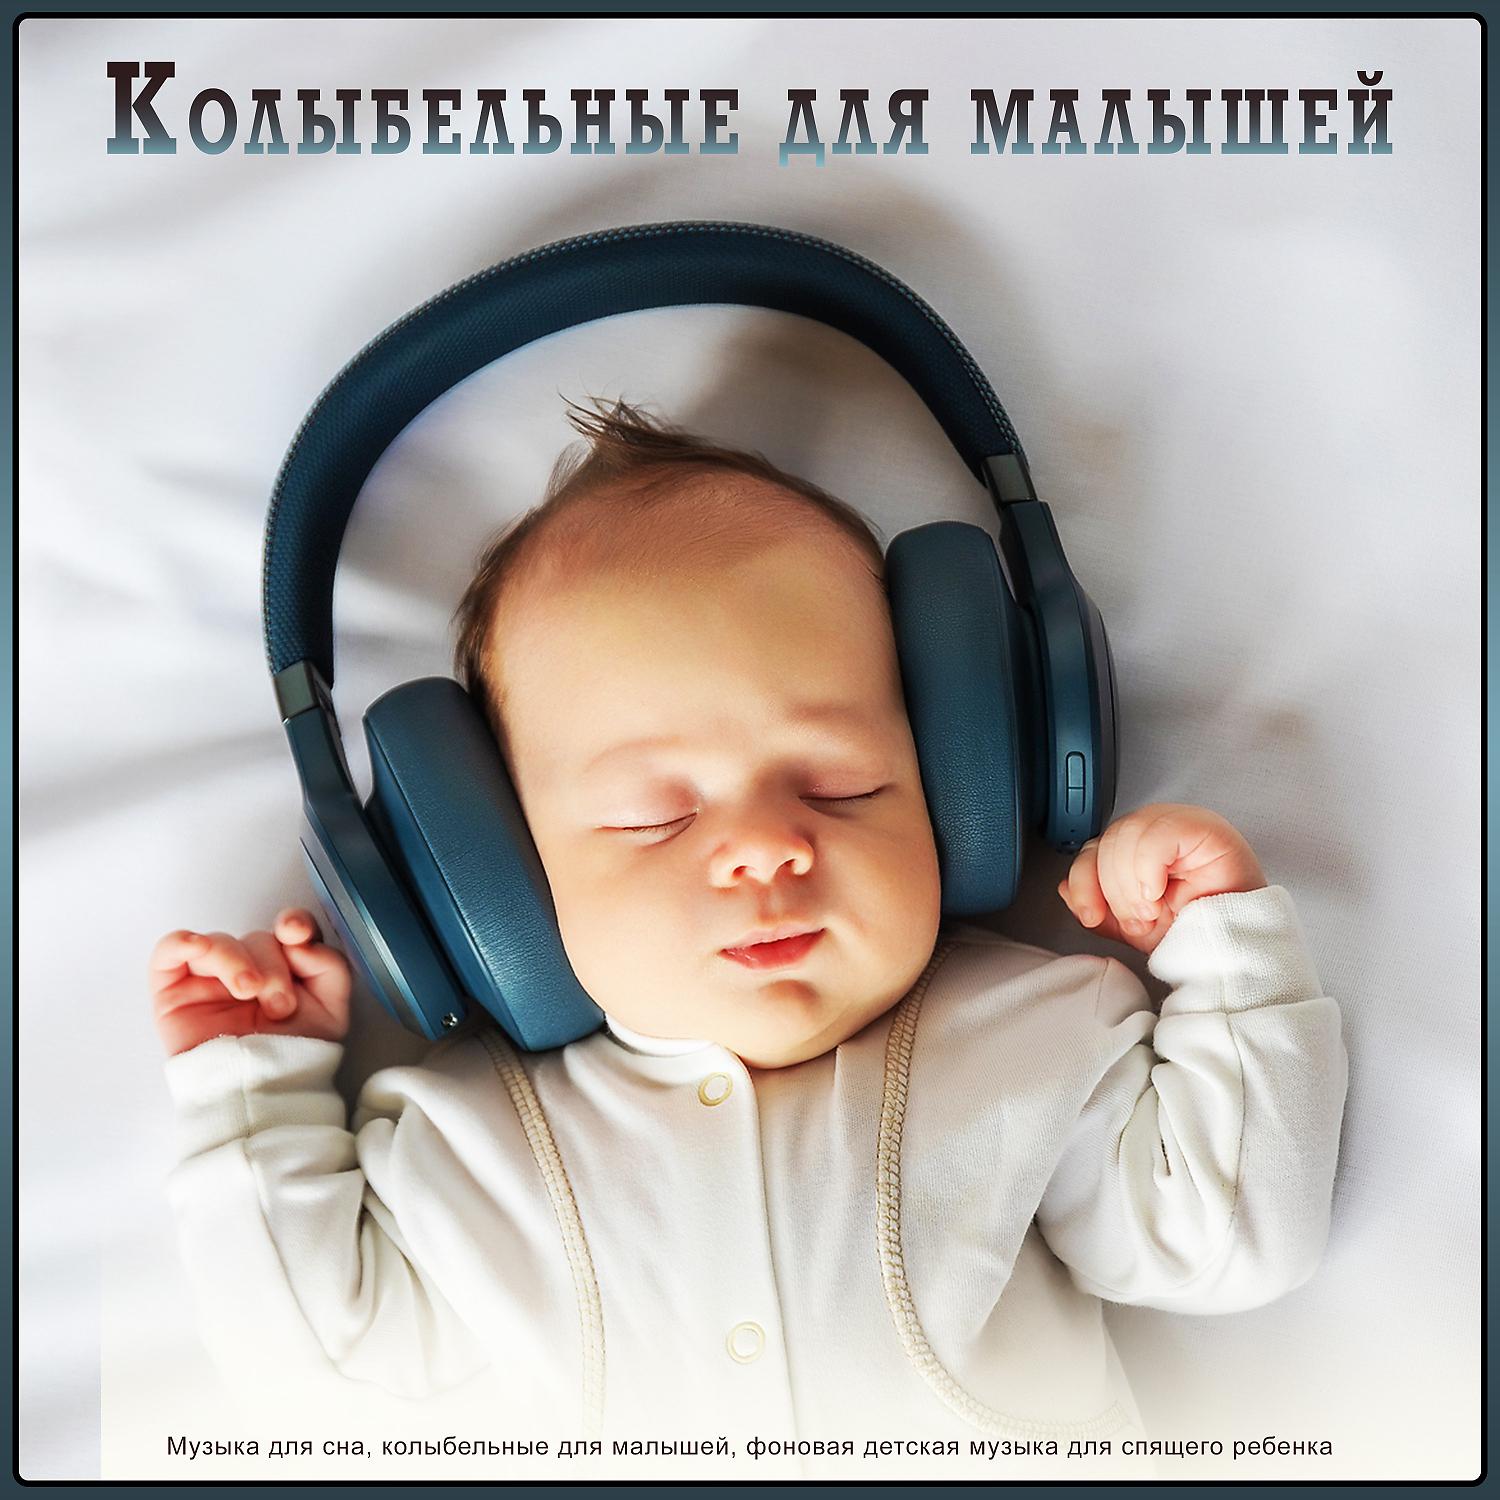 Успокаивающие колыбельные слушать без остановки. Музыка для сна младенца. Музыка для сна для малышей. Мелодии для засыпания малышей. Колыбельная для малышей успокаивающая.